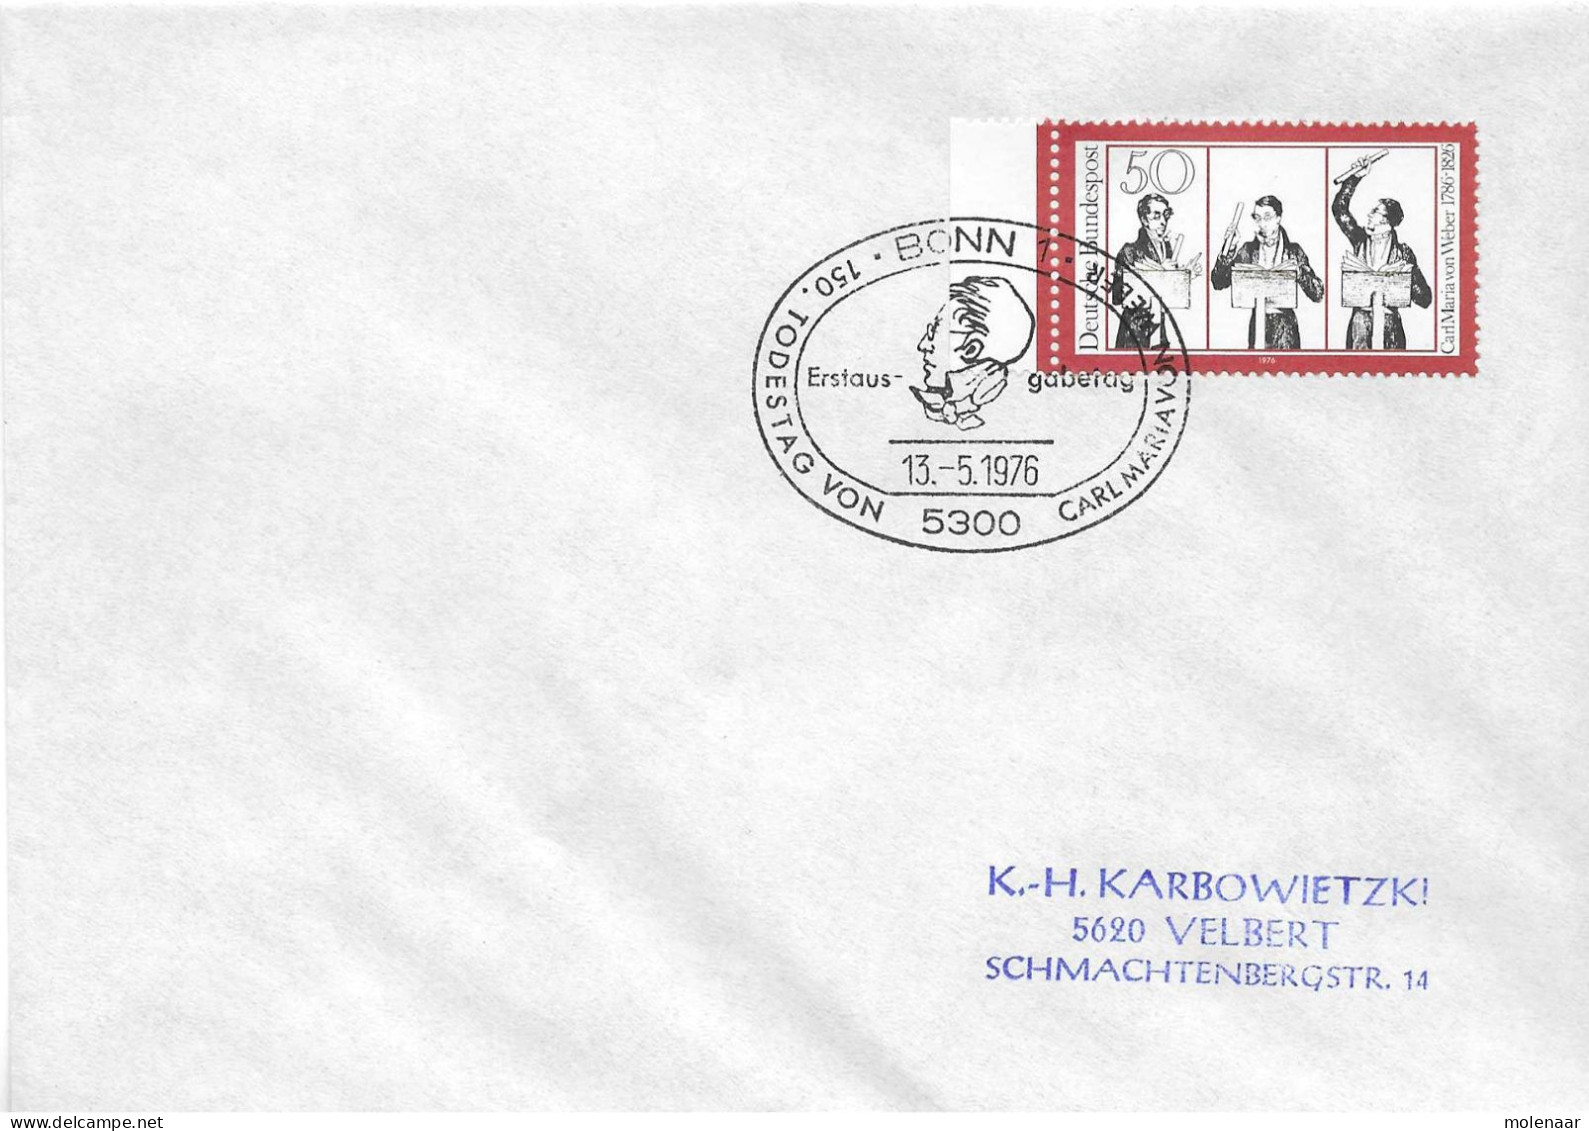 Postzegels > Europa > Duitsland > West-Duitsland > 1970-1979 > Brief Met No. 894  (17354) - Brieven En Documenten